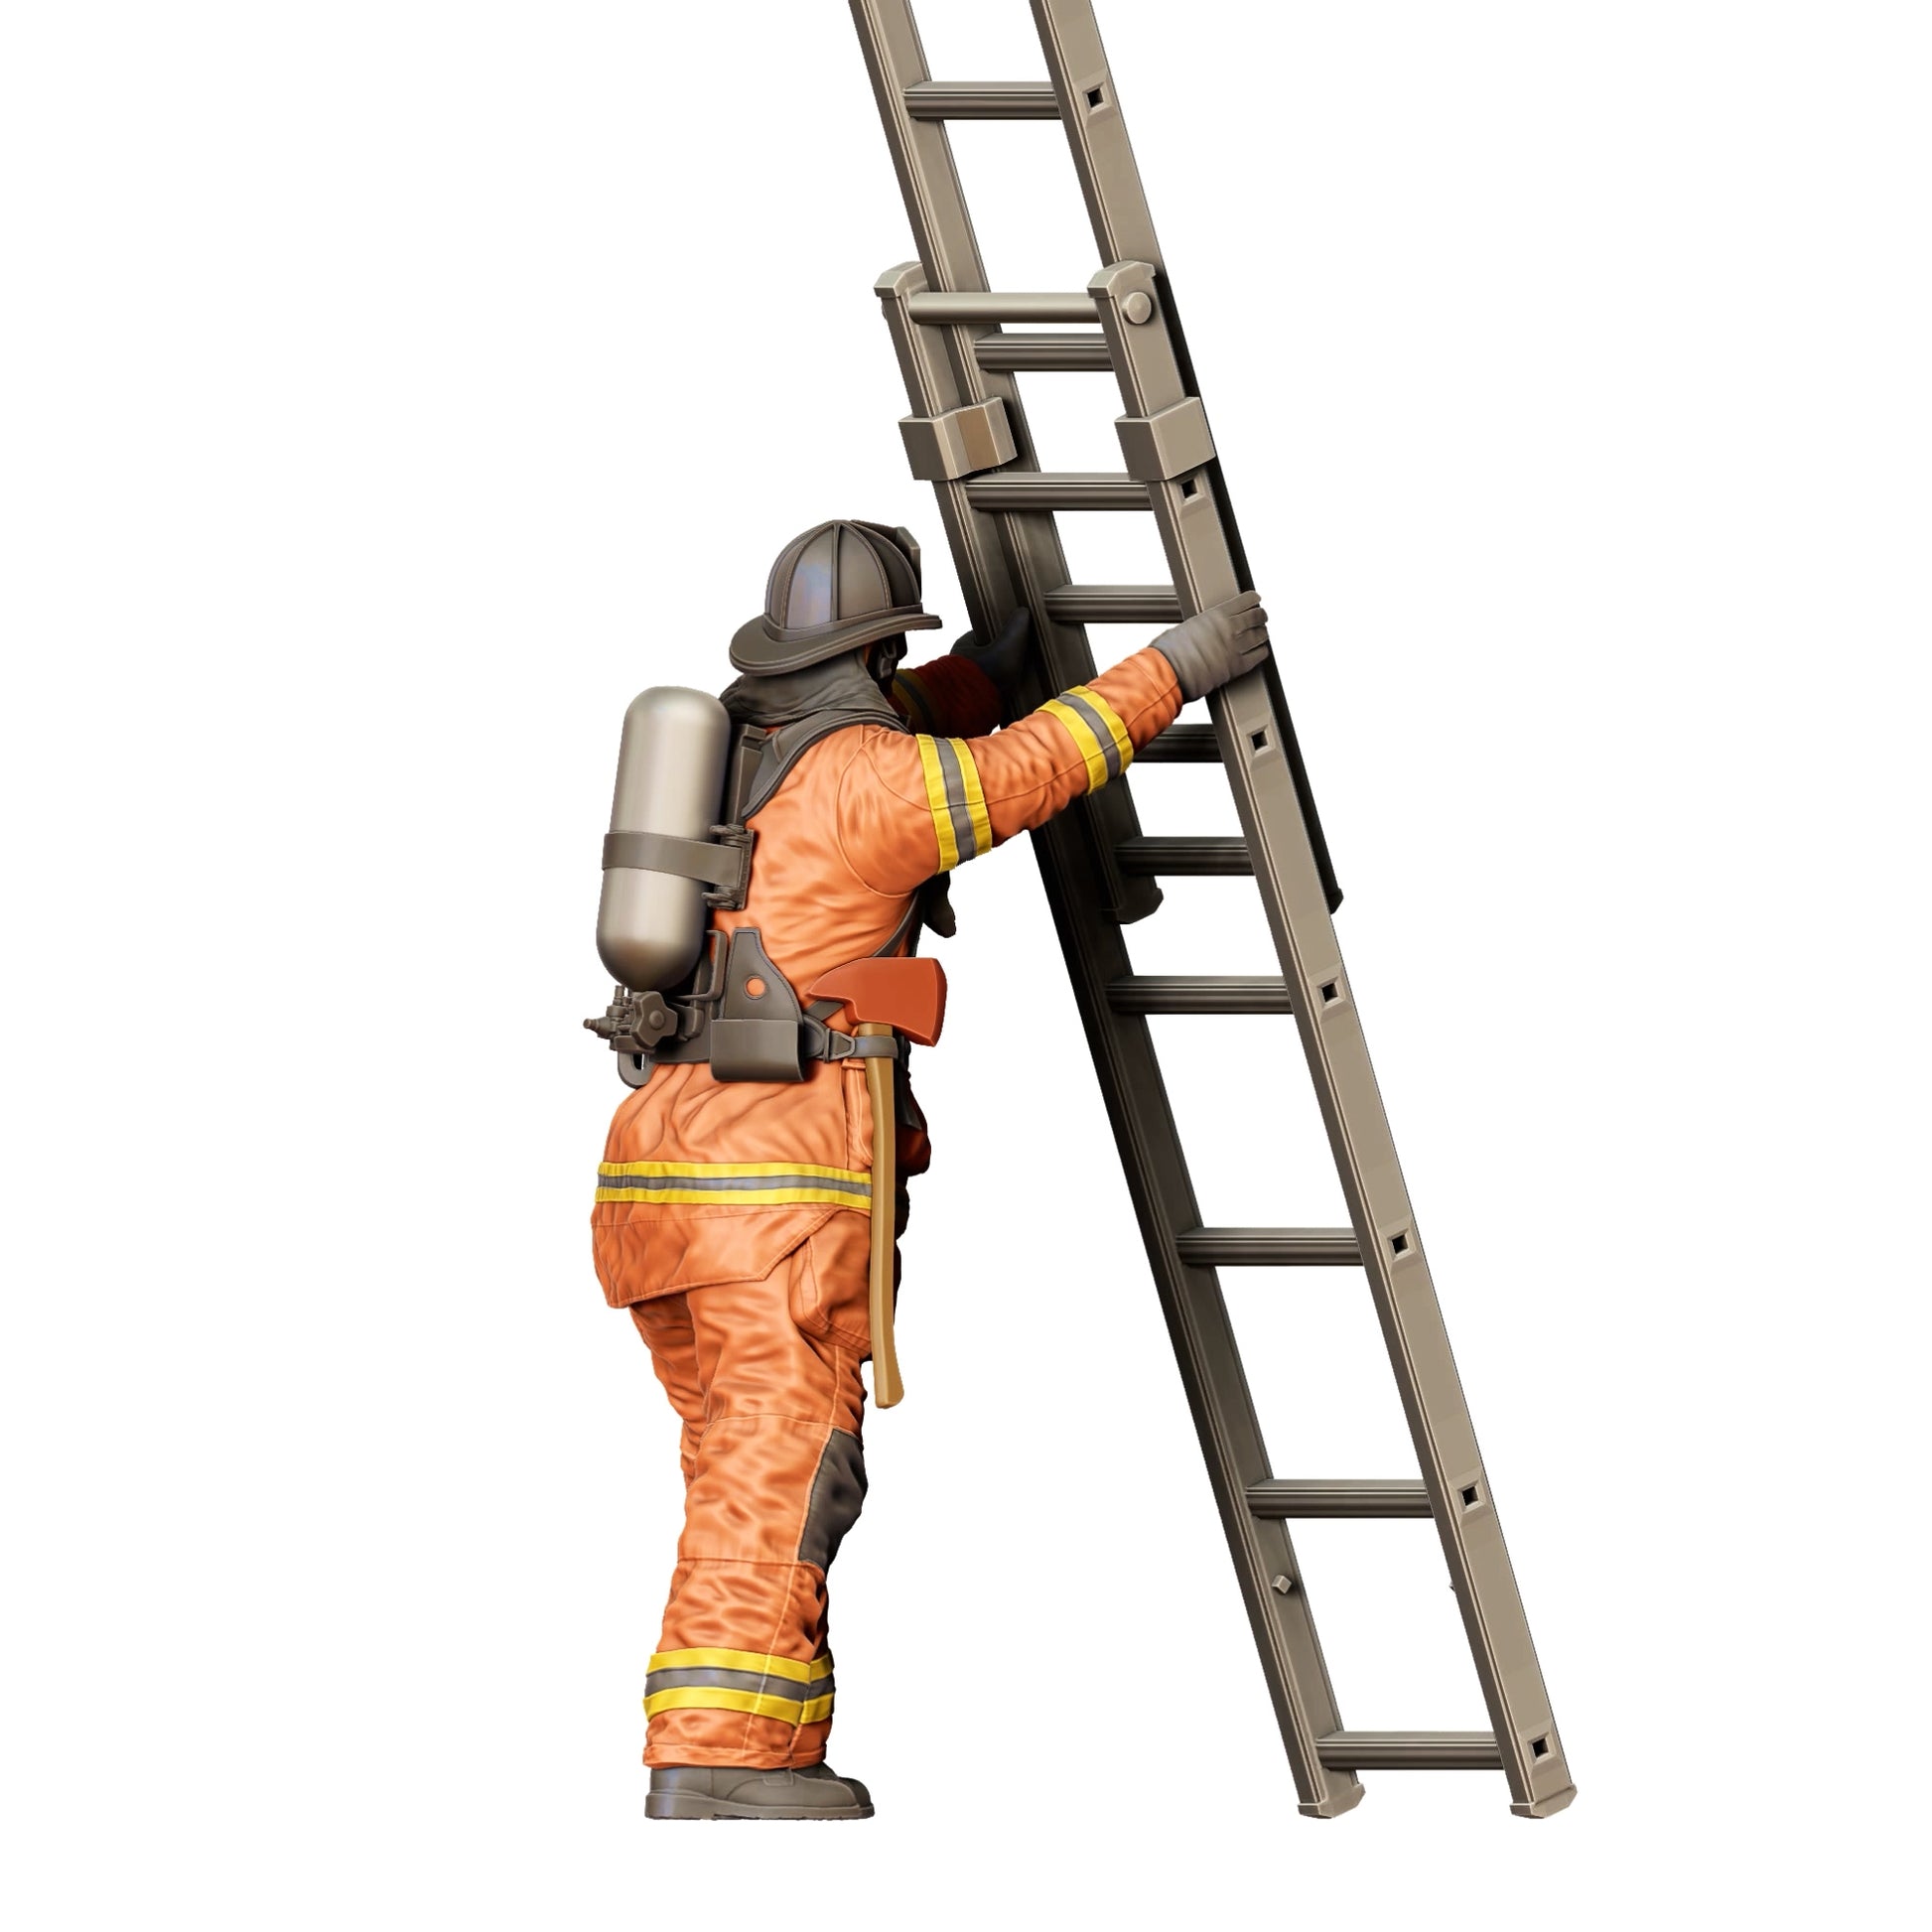 Diorama Modellbau Produktfoto 0: Feuerwehrmann Amerikanisch - Hält Leiter vorne (Ref. Nr. 309)